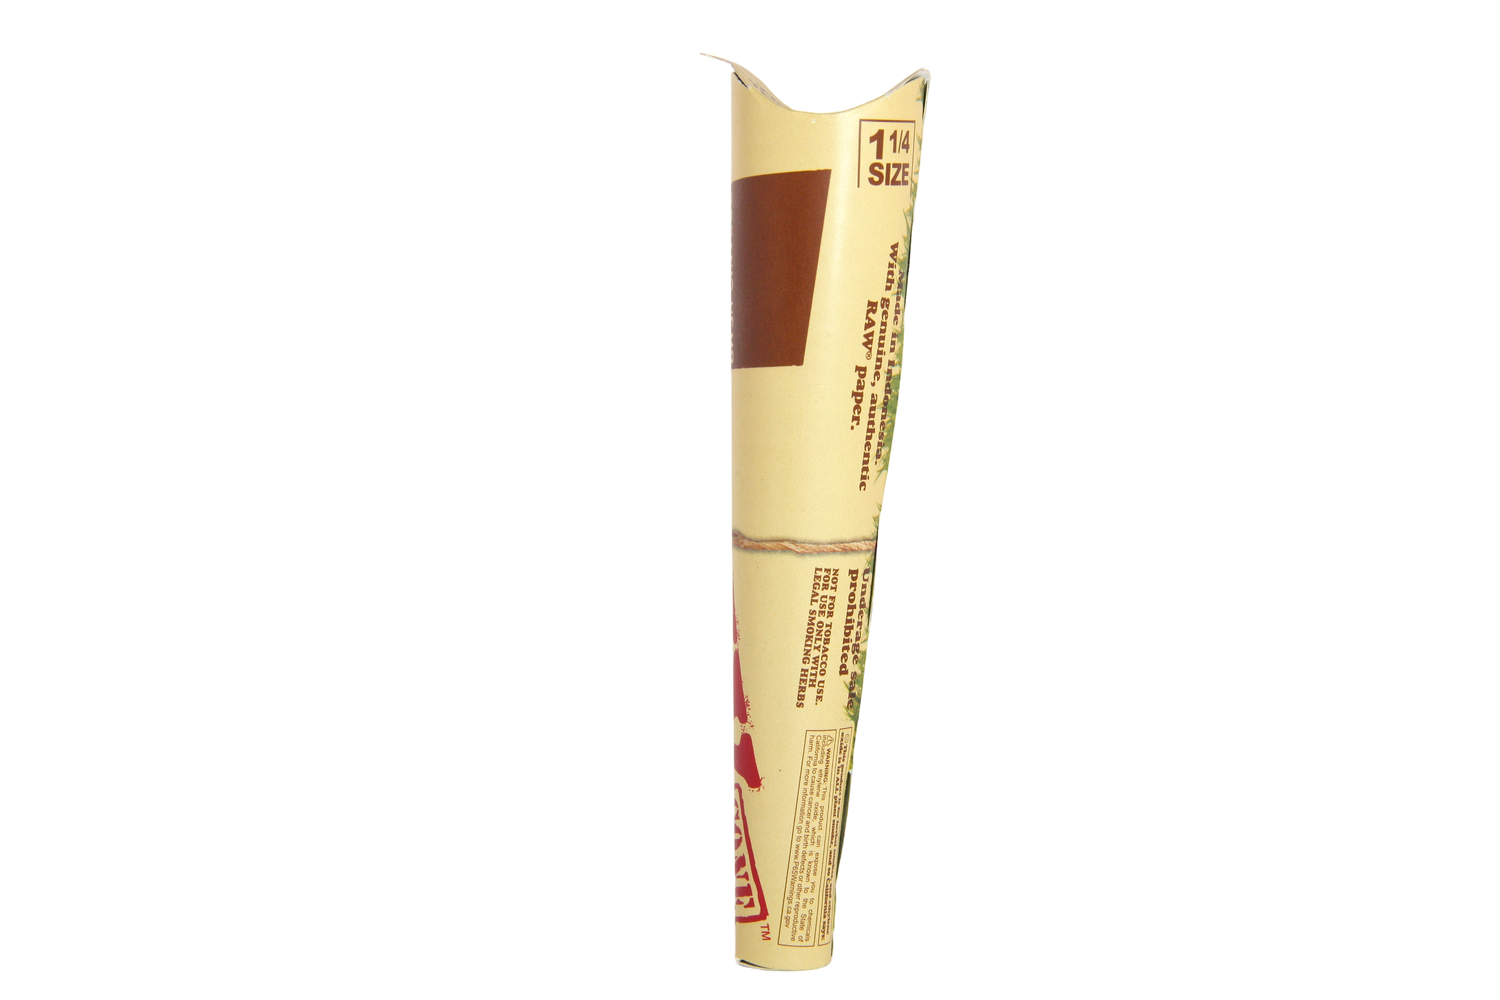 Raw Organic Hemp Cones 6pk - 1 1/4